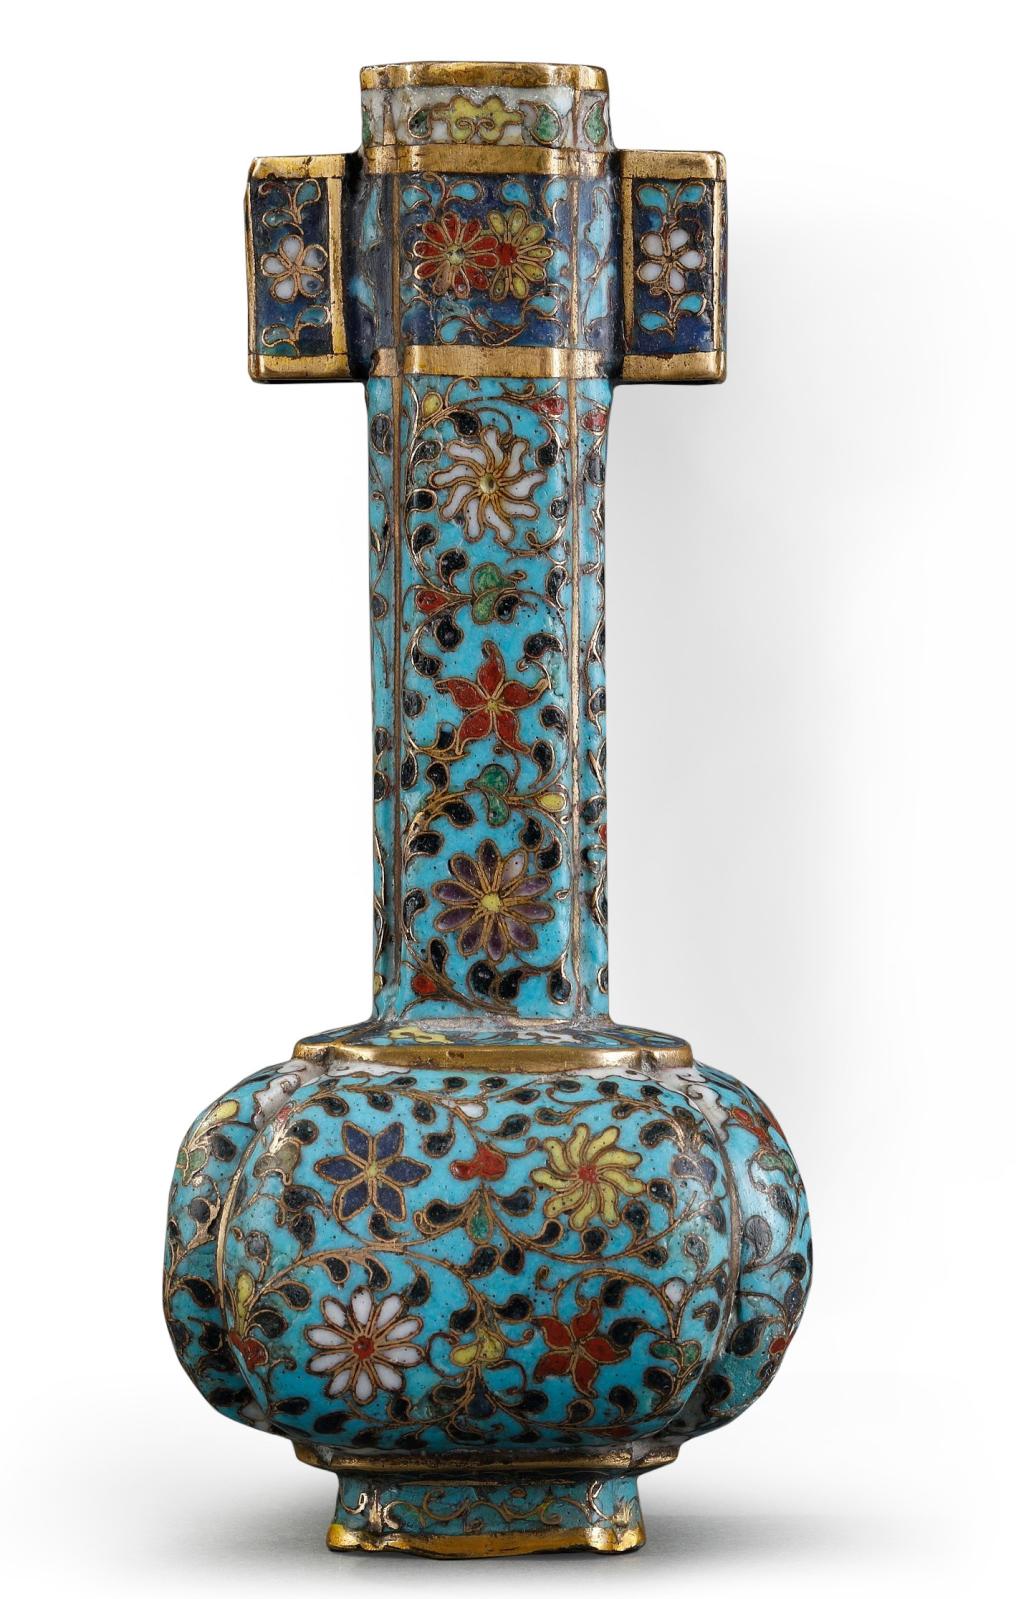 Chine, dynastie Ming, XVIe siècle. Vase flèche (touhu) à décor de fleurettes et rinceaux sur fond turquoise, bronze doré et émaux cloisonn